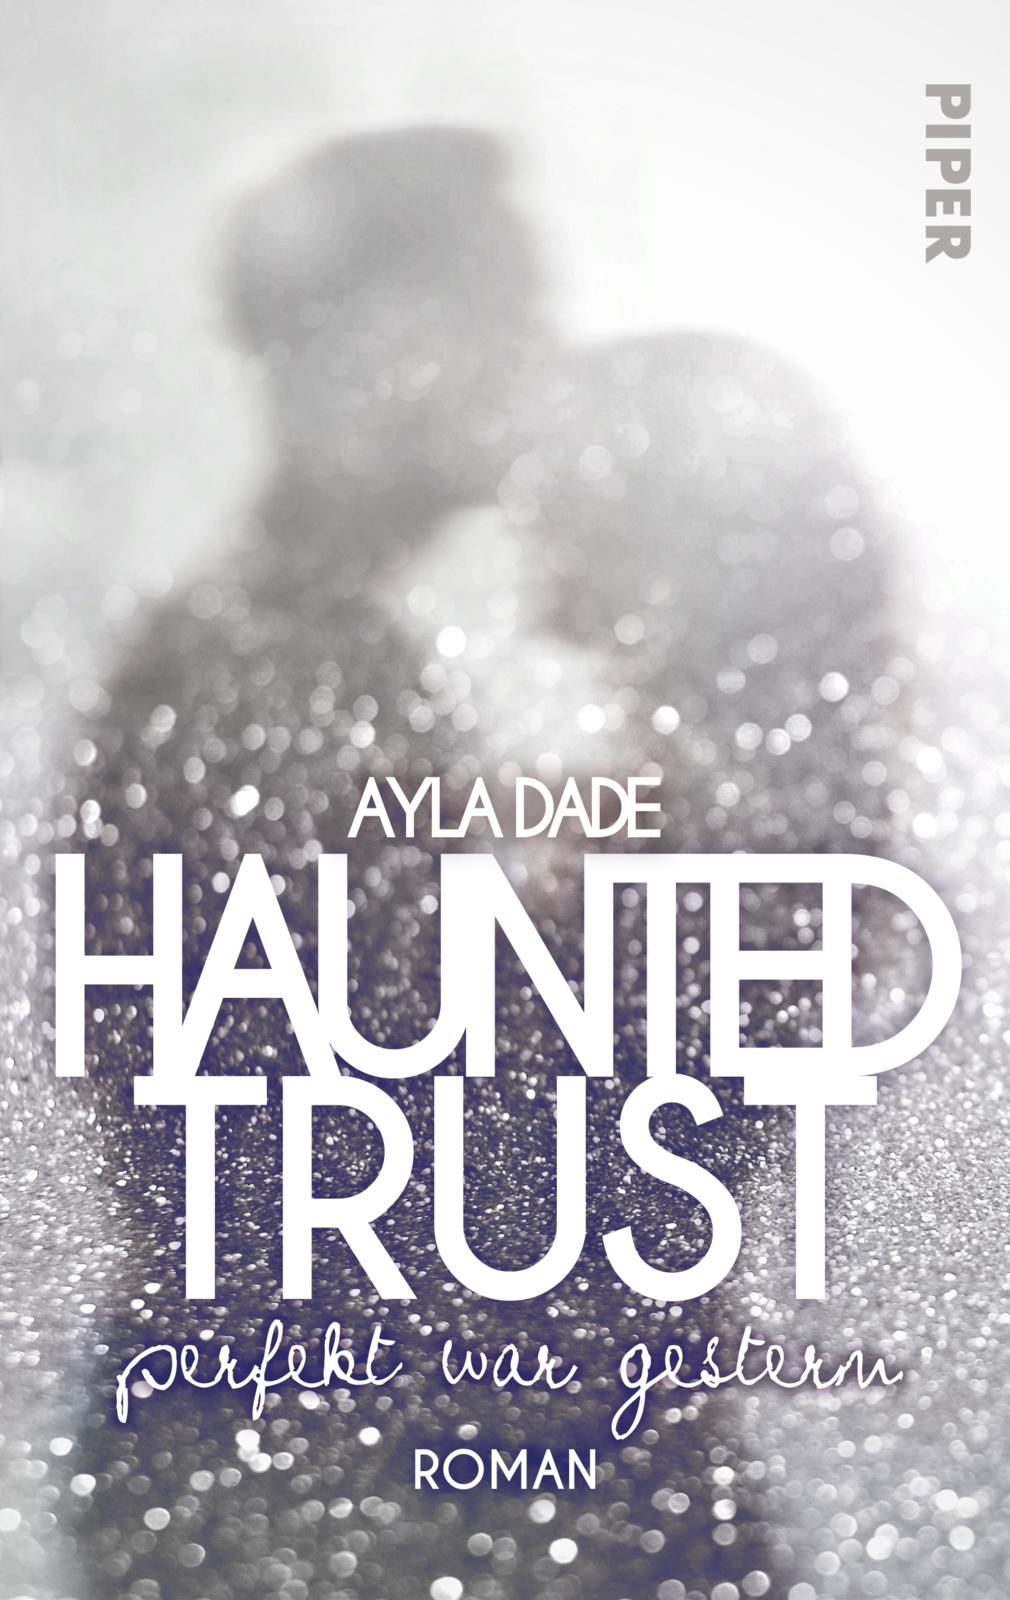 Ayla DadeHaunted Trust – Perfekt war gestern